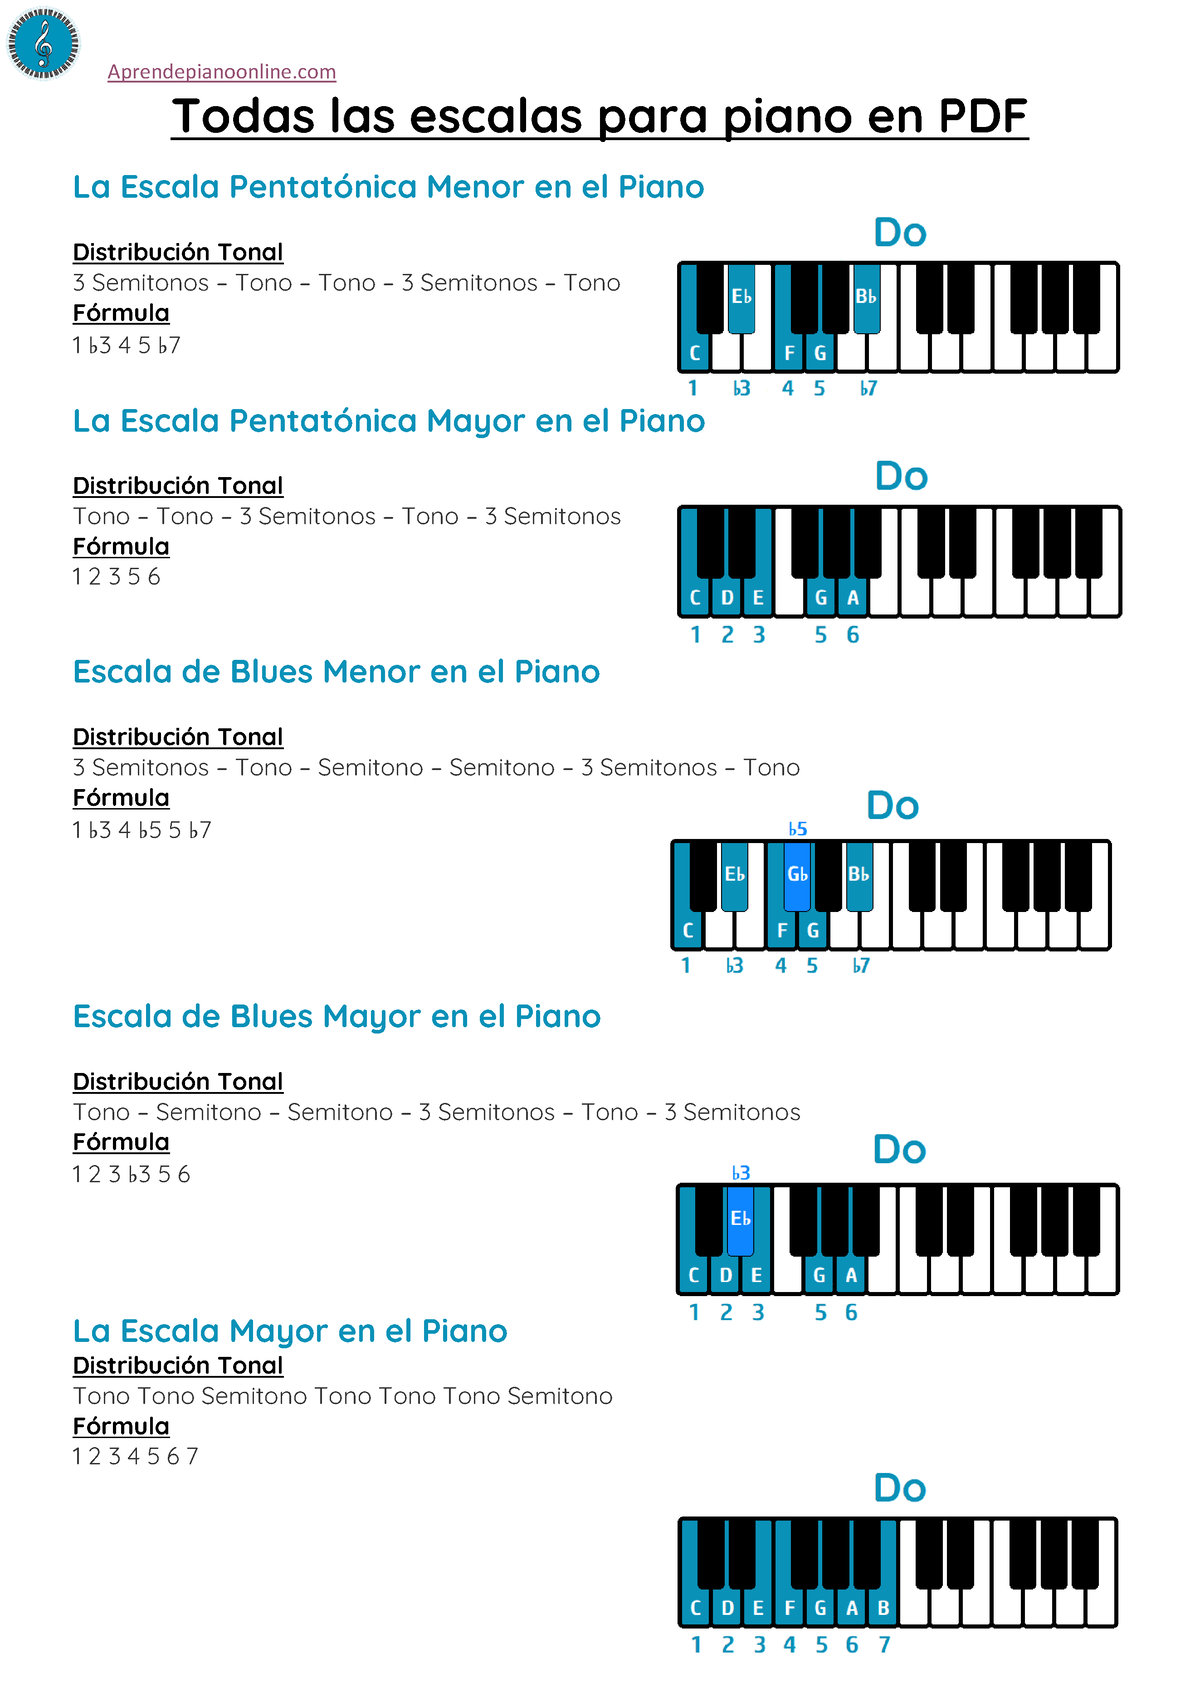 Todas las escalas para piano PDF - Aprendepianoonline Todas las escalas ...